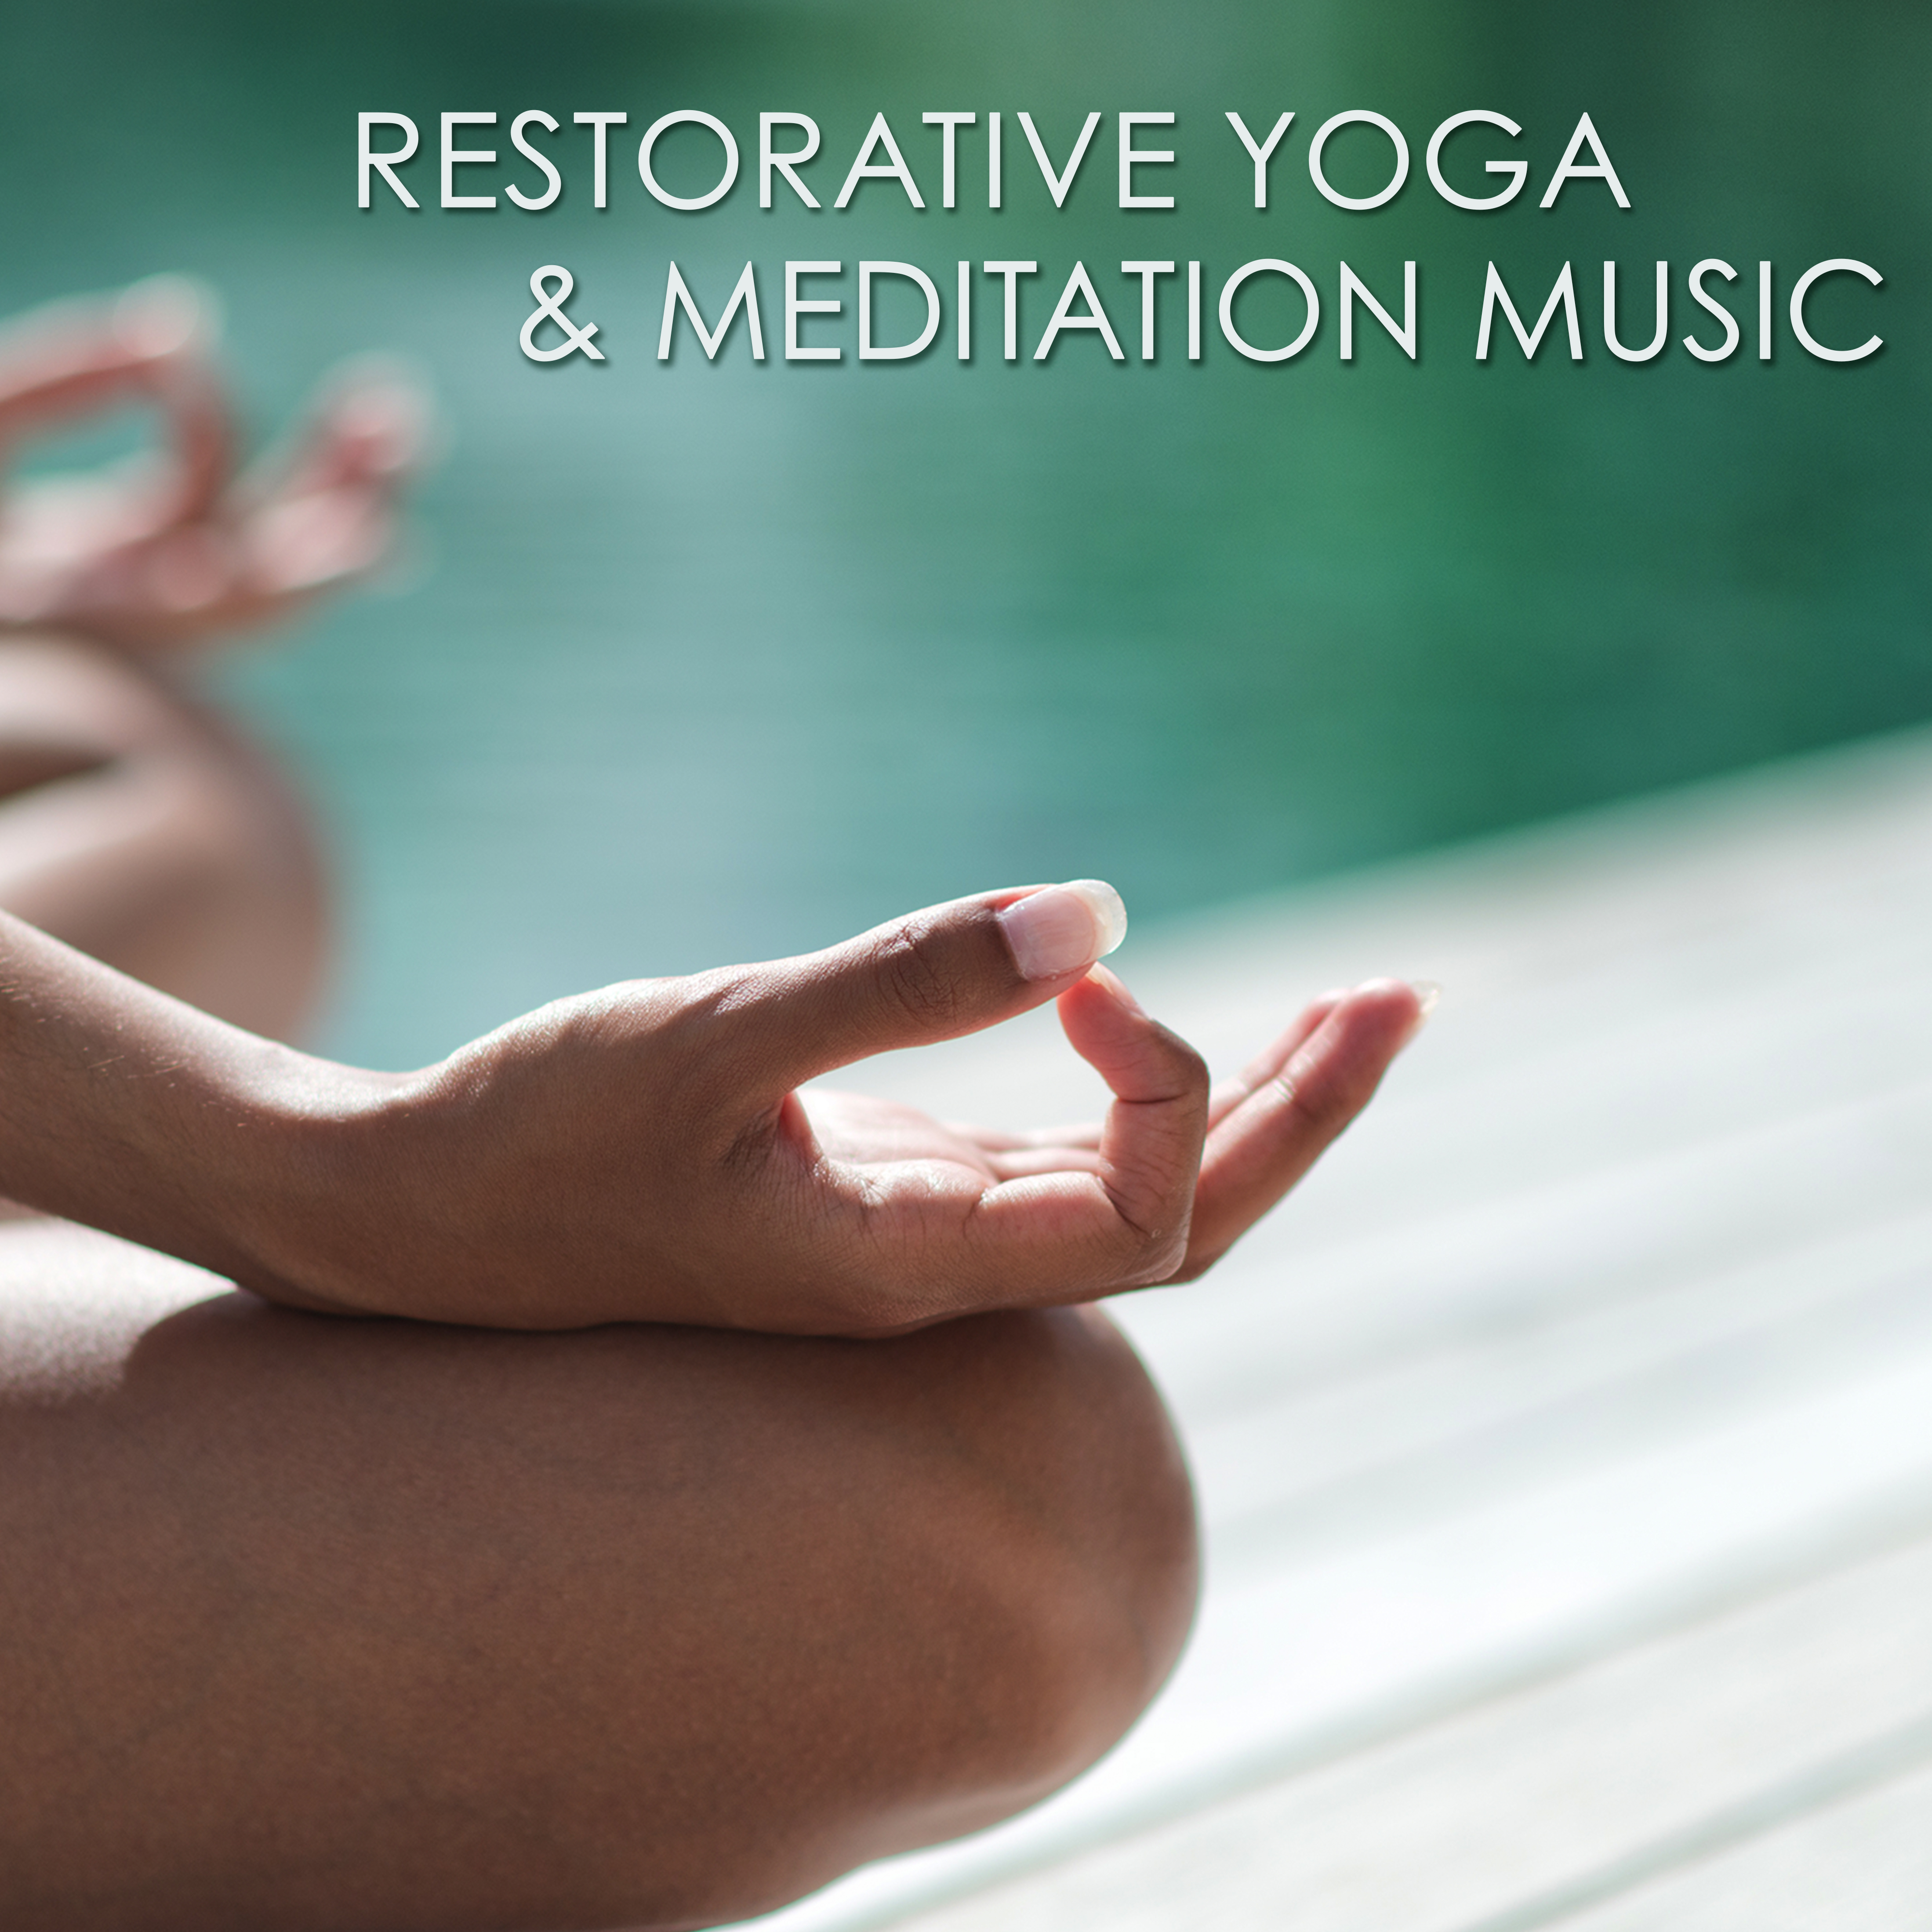 Restorative Yoga & Meditation Music – Amazing Peaceful Songs for Yoga Practice, Pranayama and Mindfulness Meditation